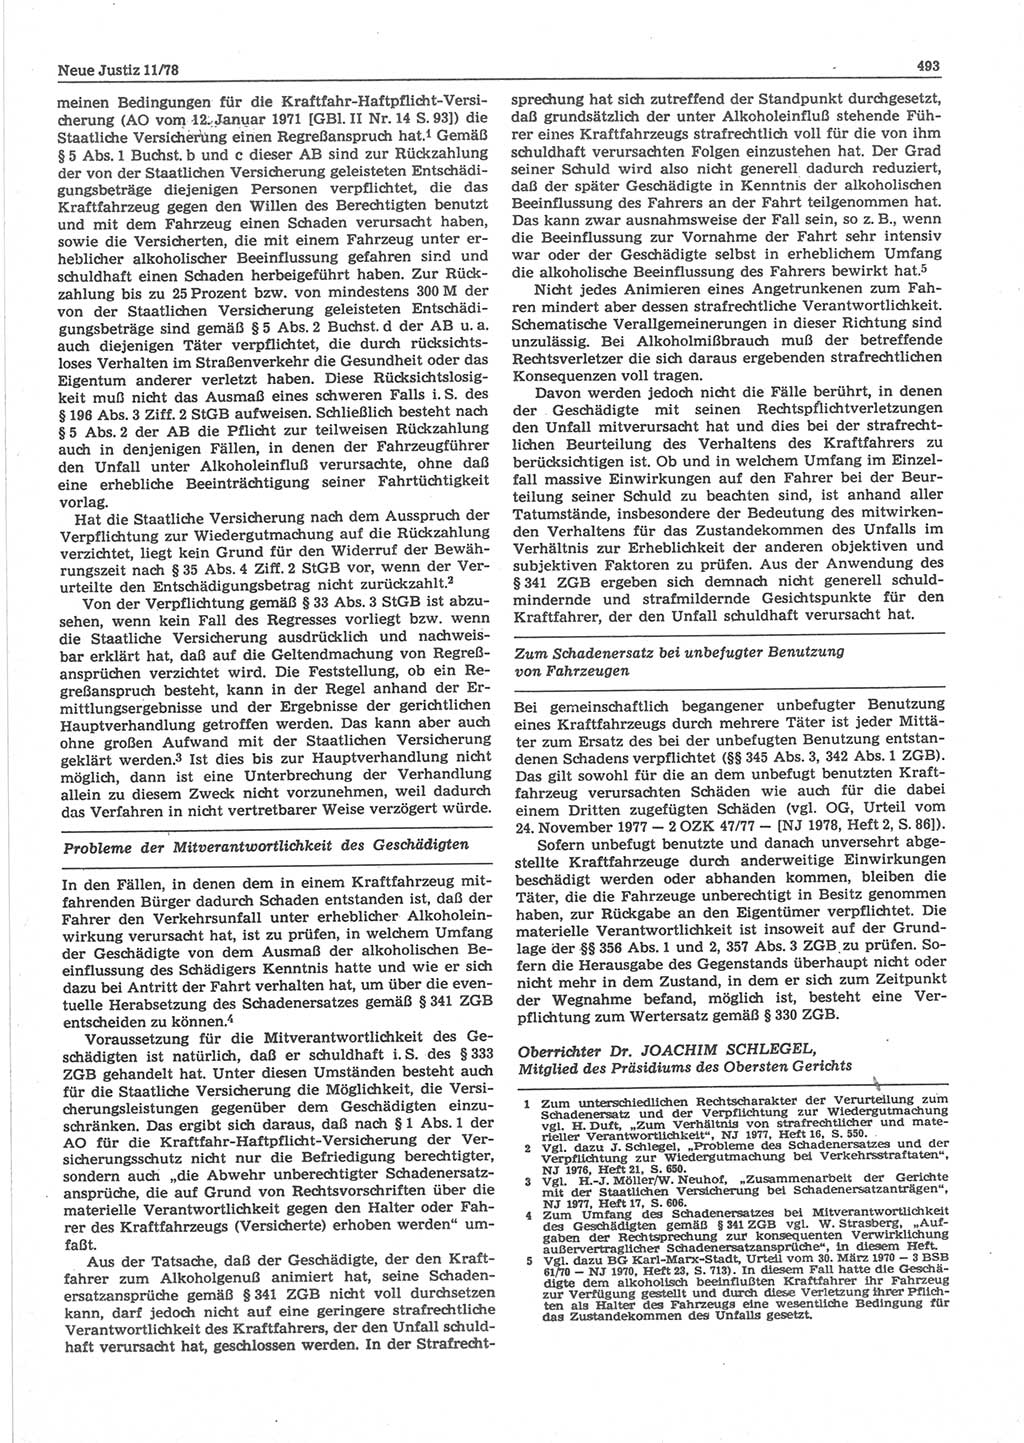 Neue Justiz (NJ), Zeitschrift für sozialistisches Recht und Gesetzlichkeit [Deutsche Demokratische Republik (DDR)], 32. Jahrgang 1978, Seite 493 (NJ DDR 1978, S. 493)